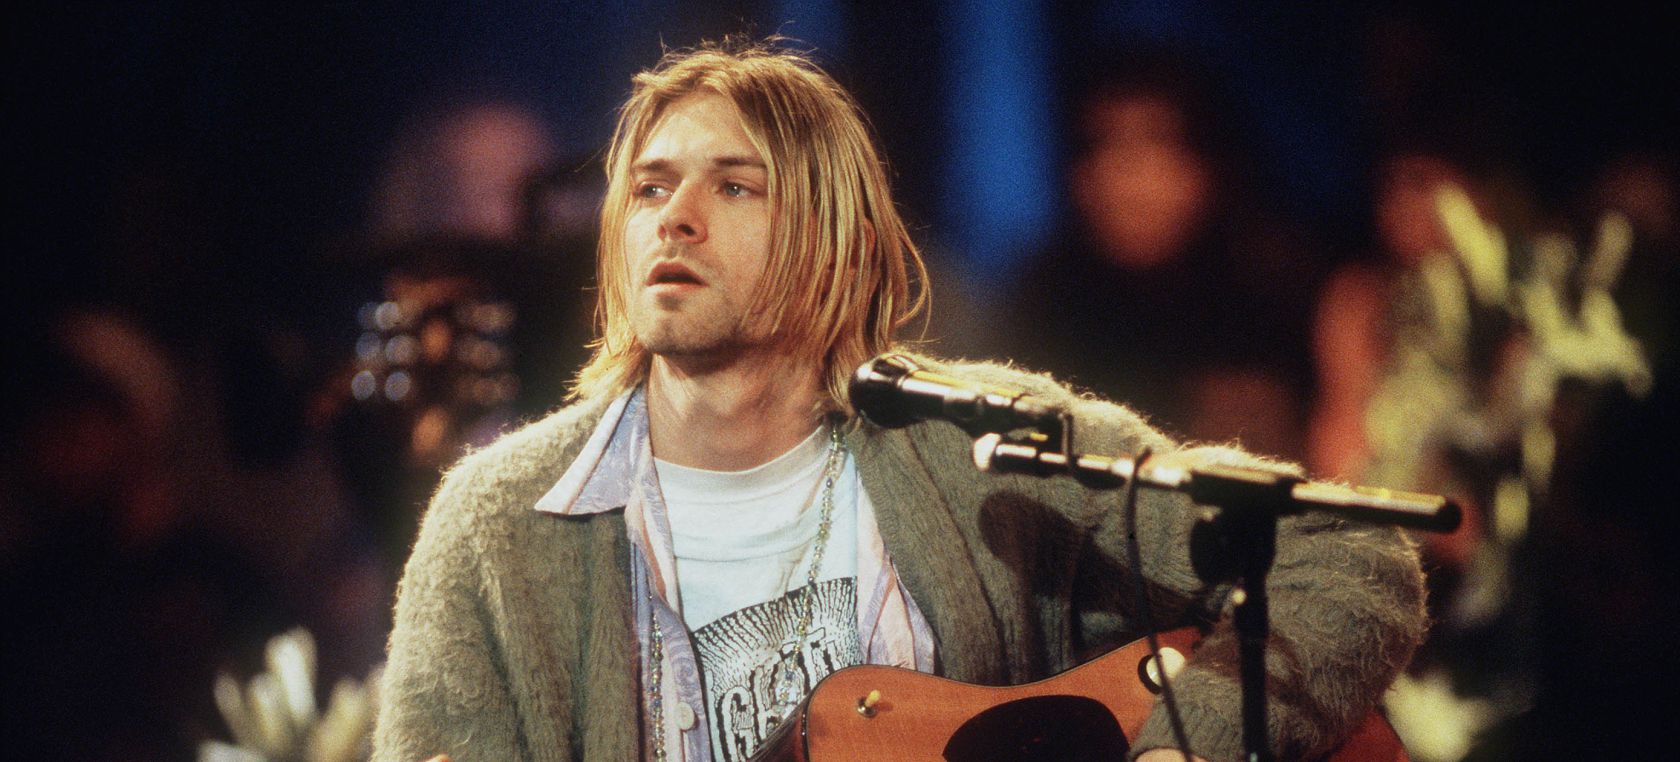 La historia de ‘The man who sold the world’: La versión de Nirvana que tanto gustaba y enfadaba David Bowie